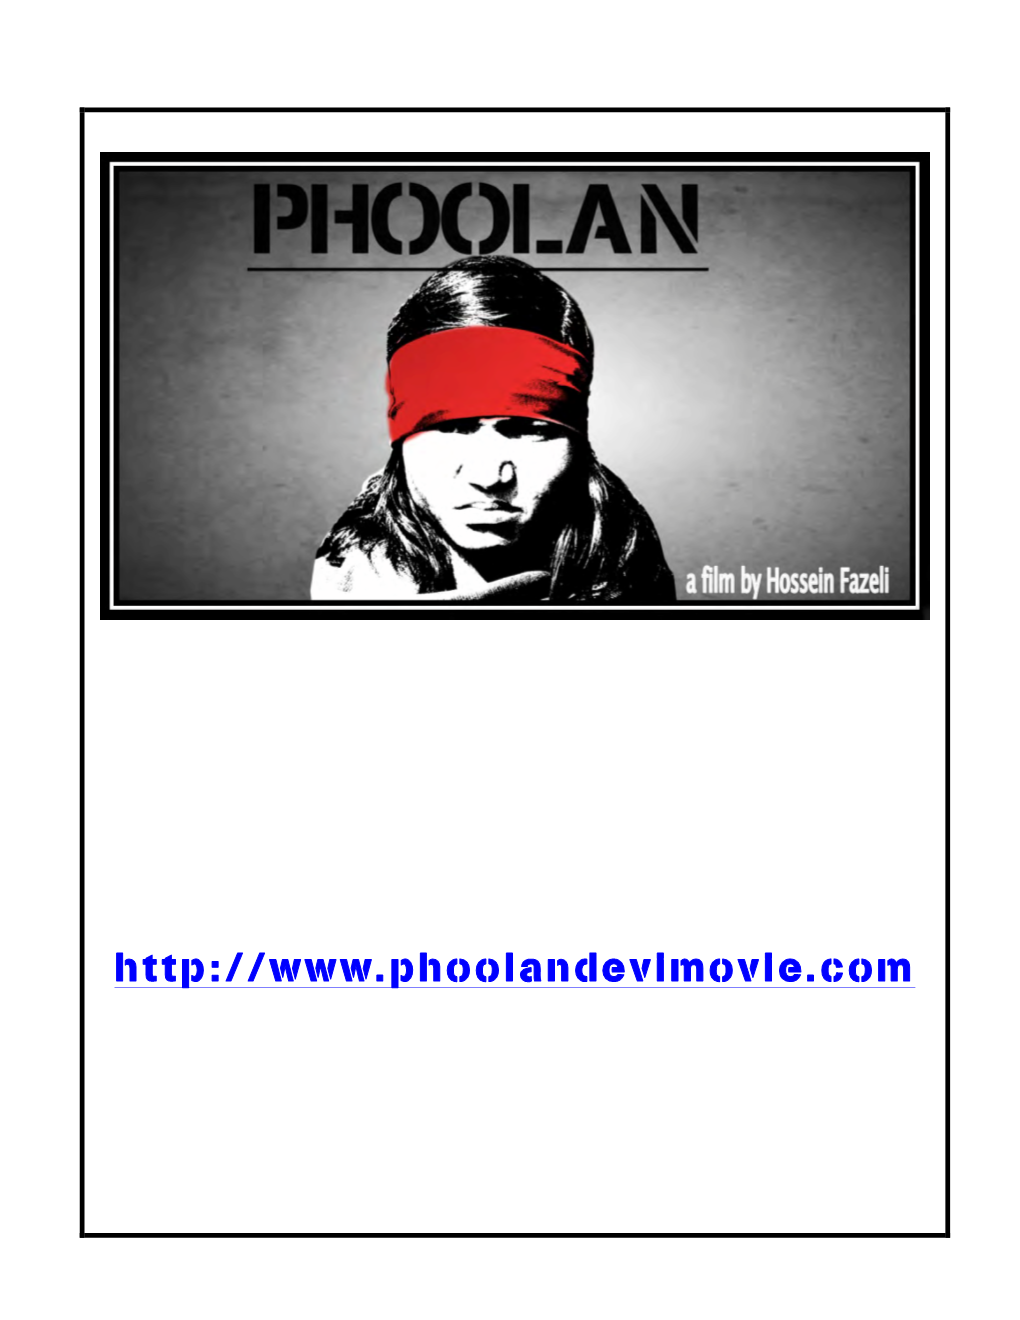 Phoolan Press